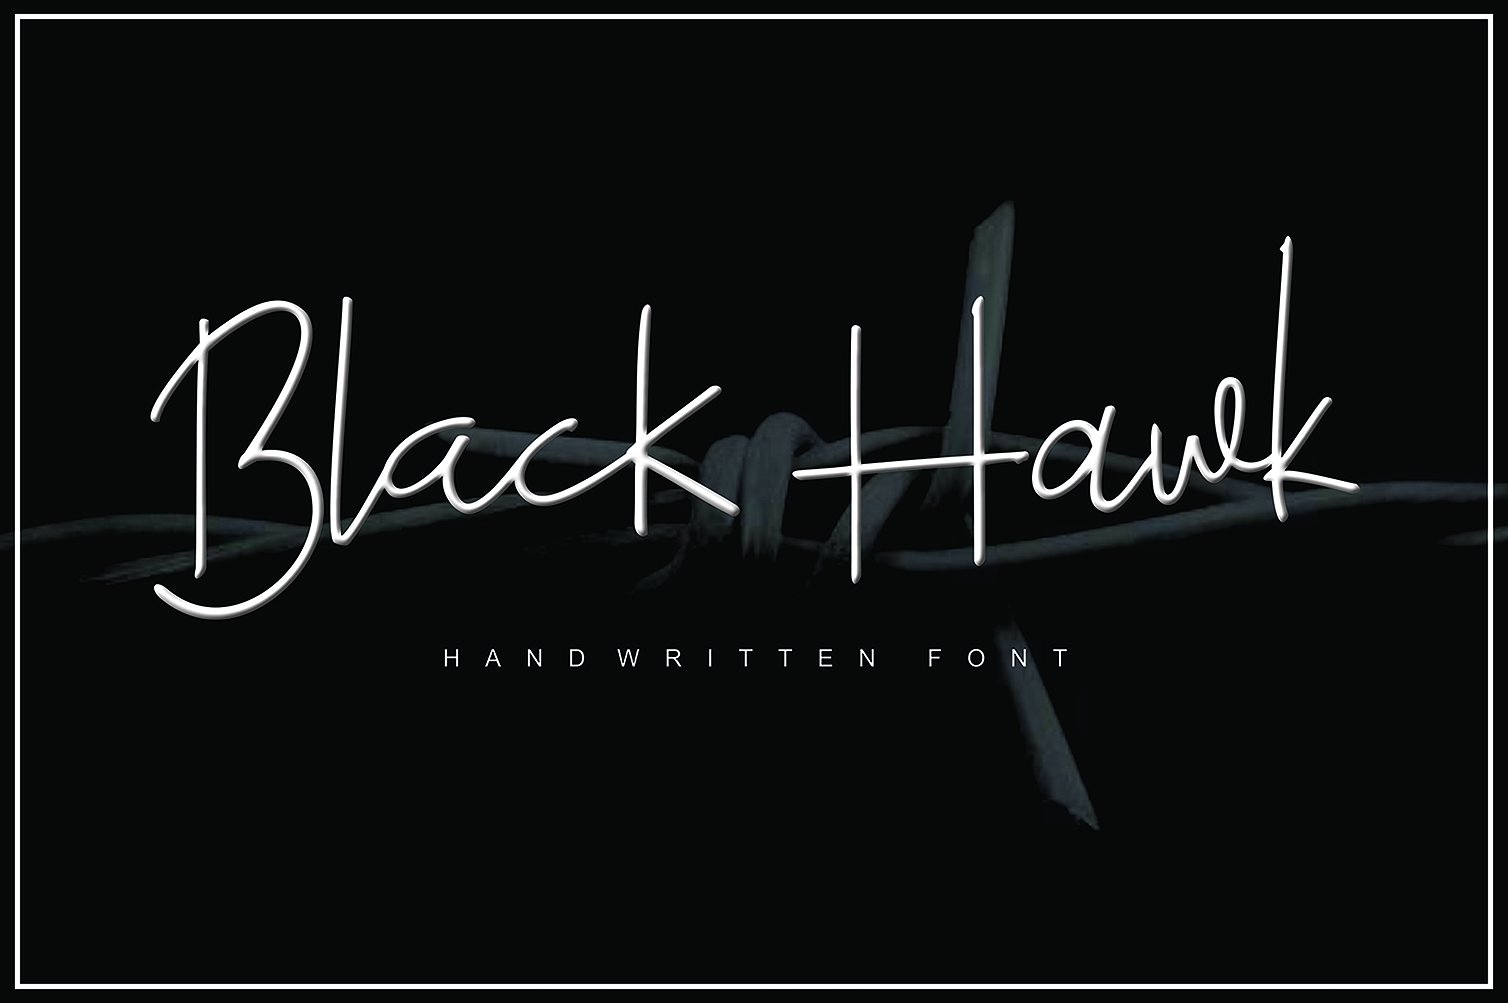 Black Hawk Font